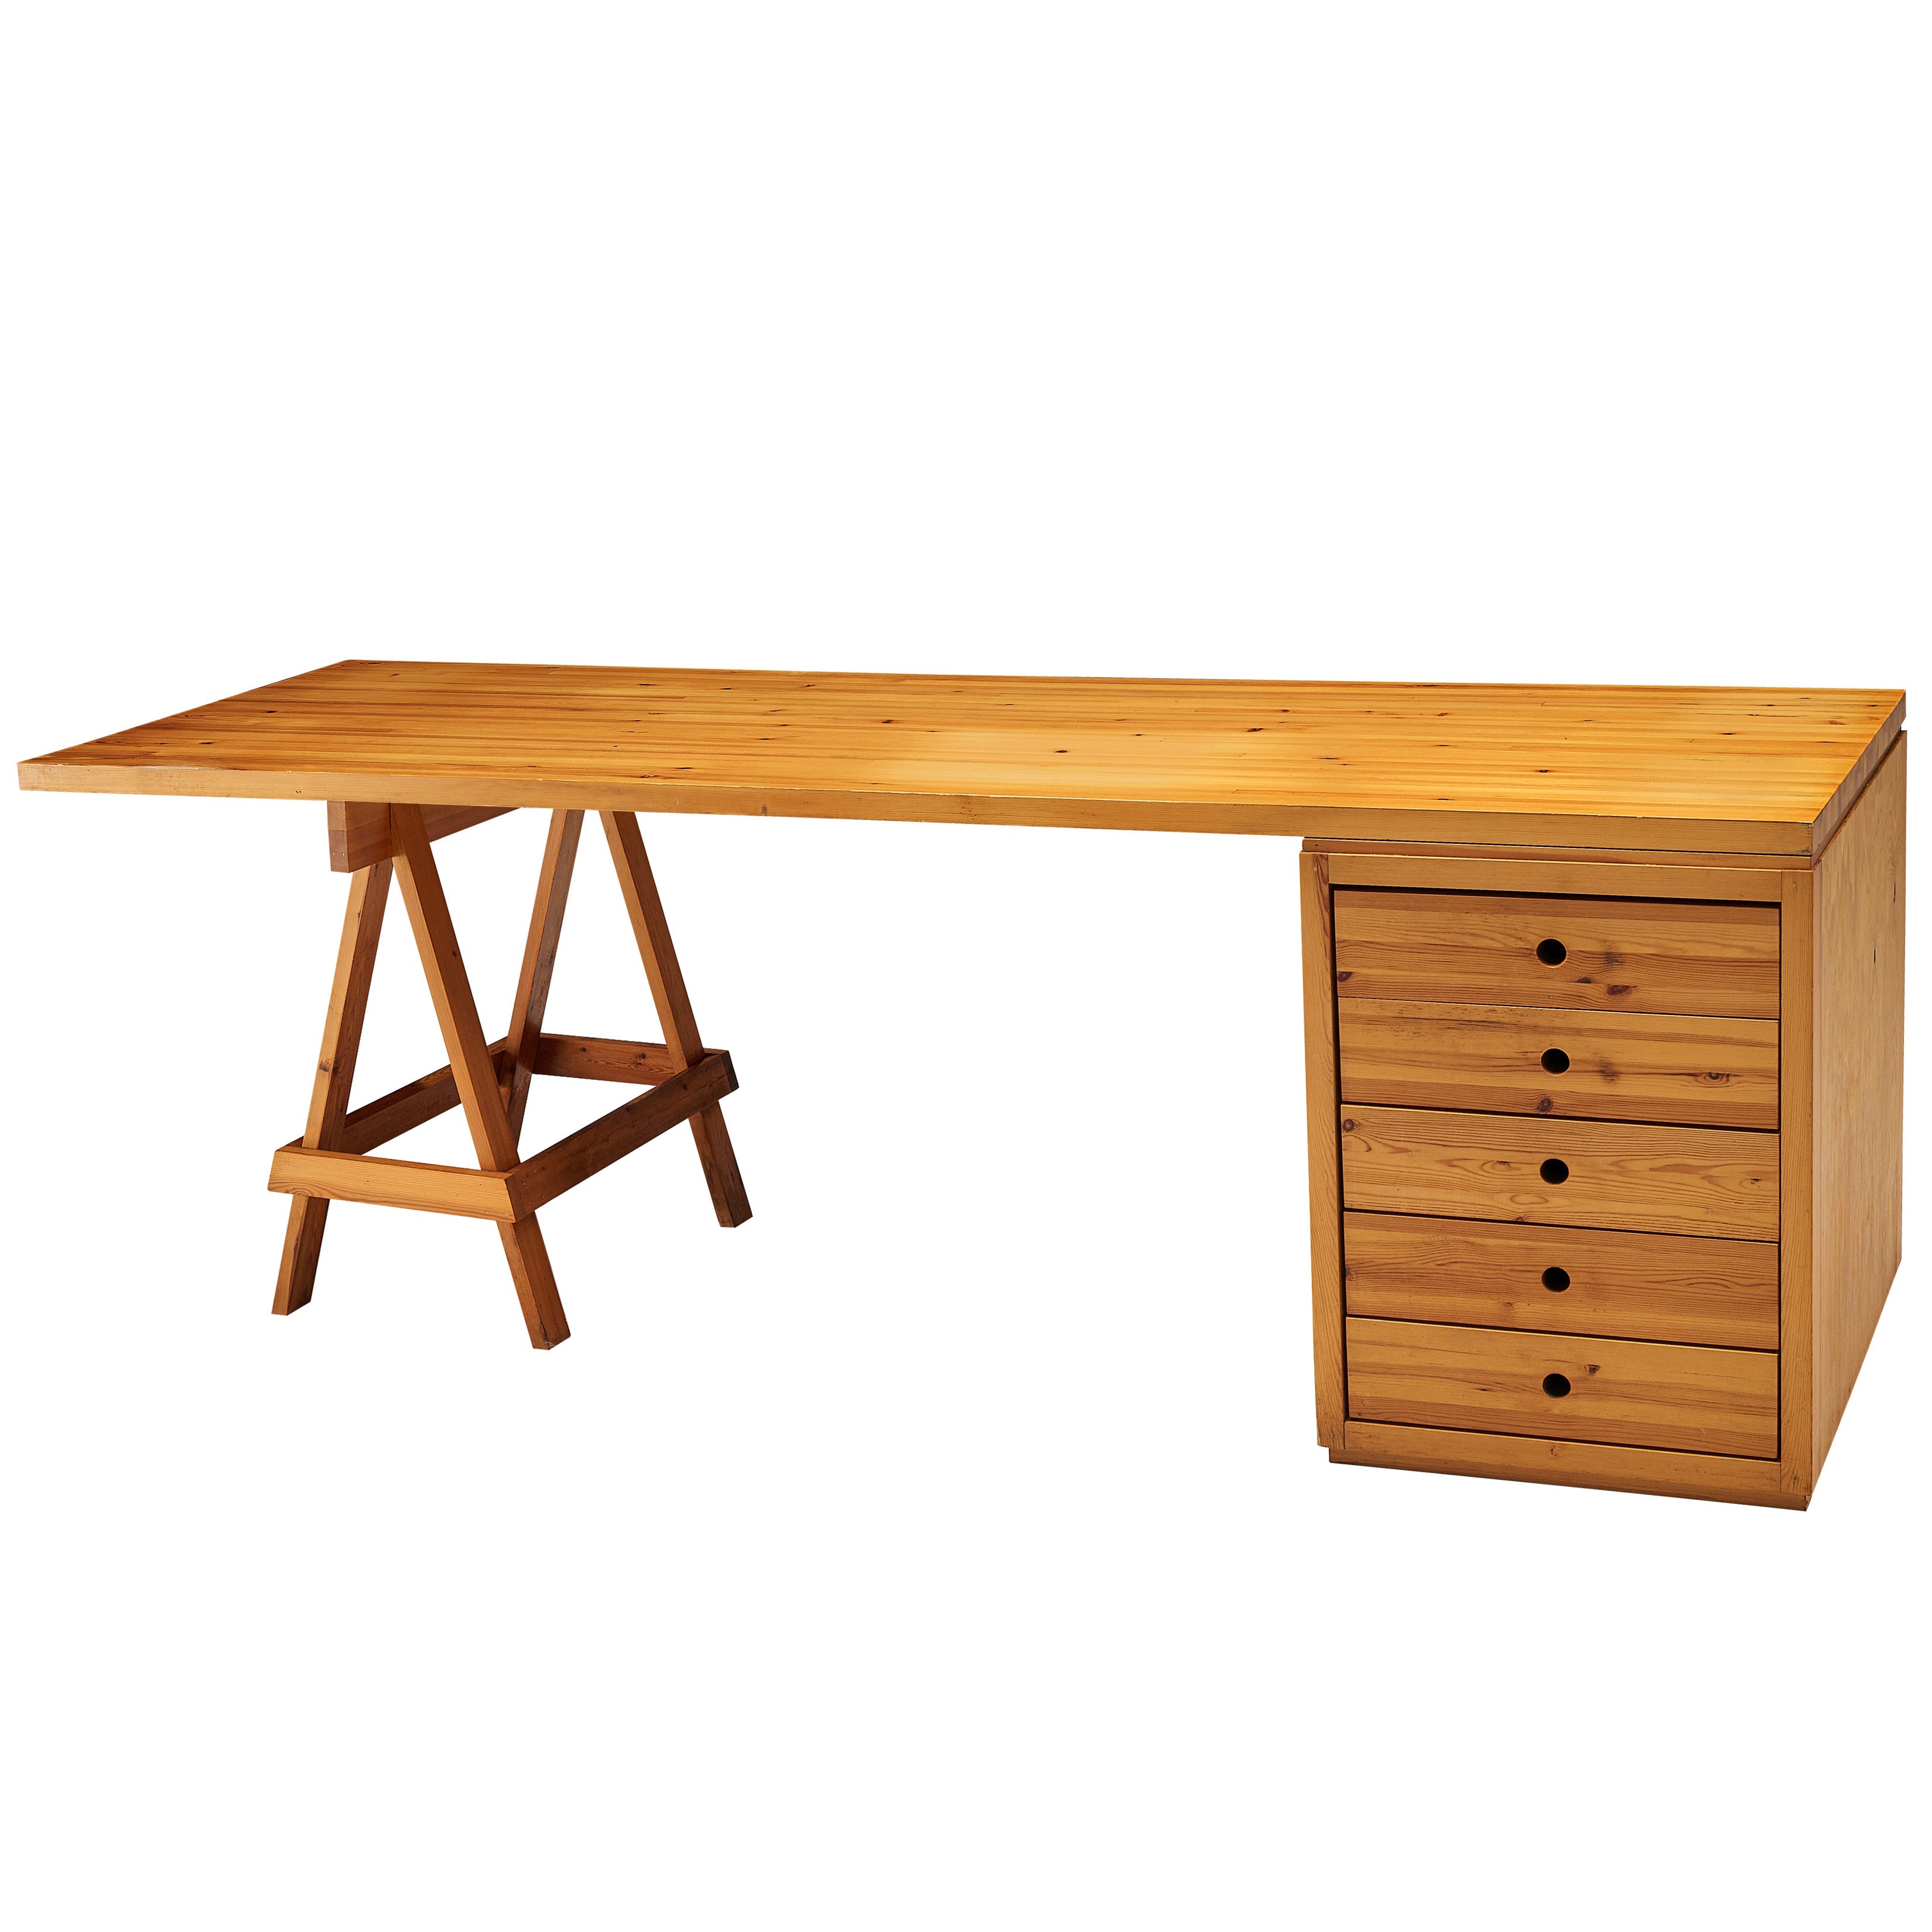 Ate van Apeldoorn Large Free-Standing Desk with Drawers in Solid Pine